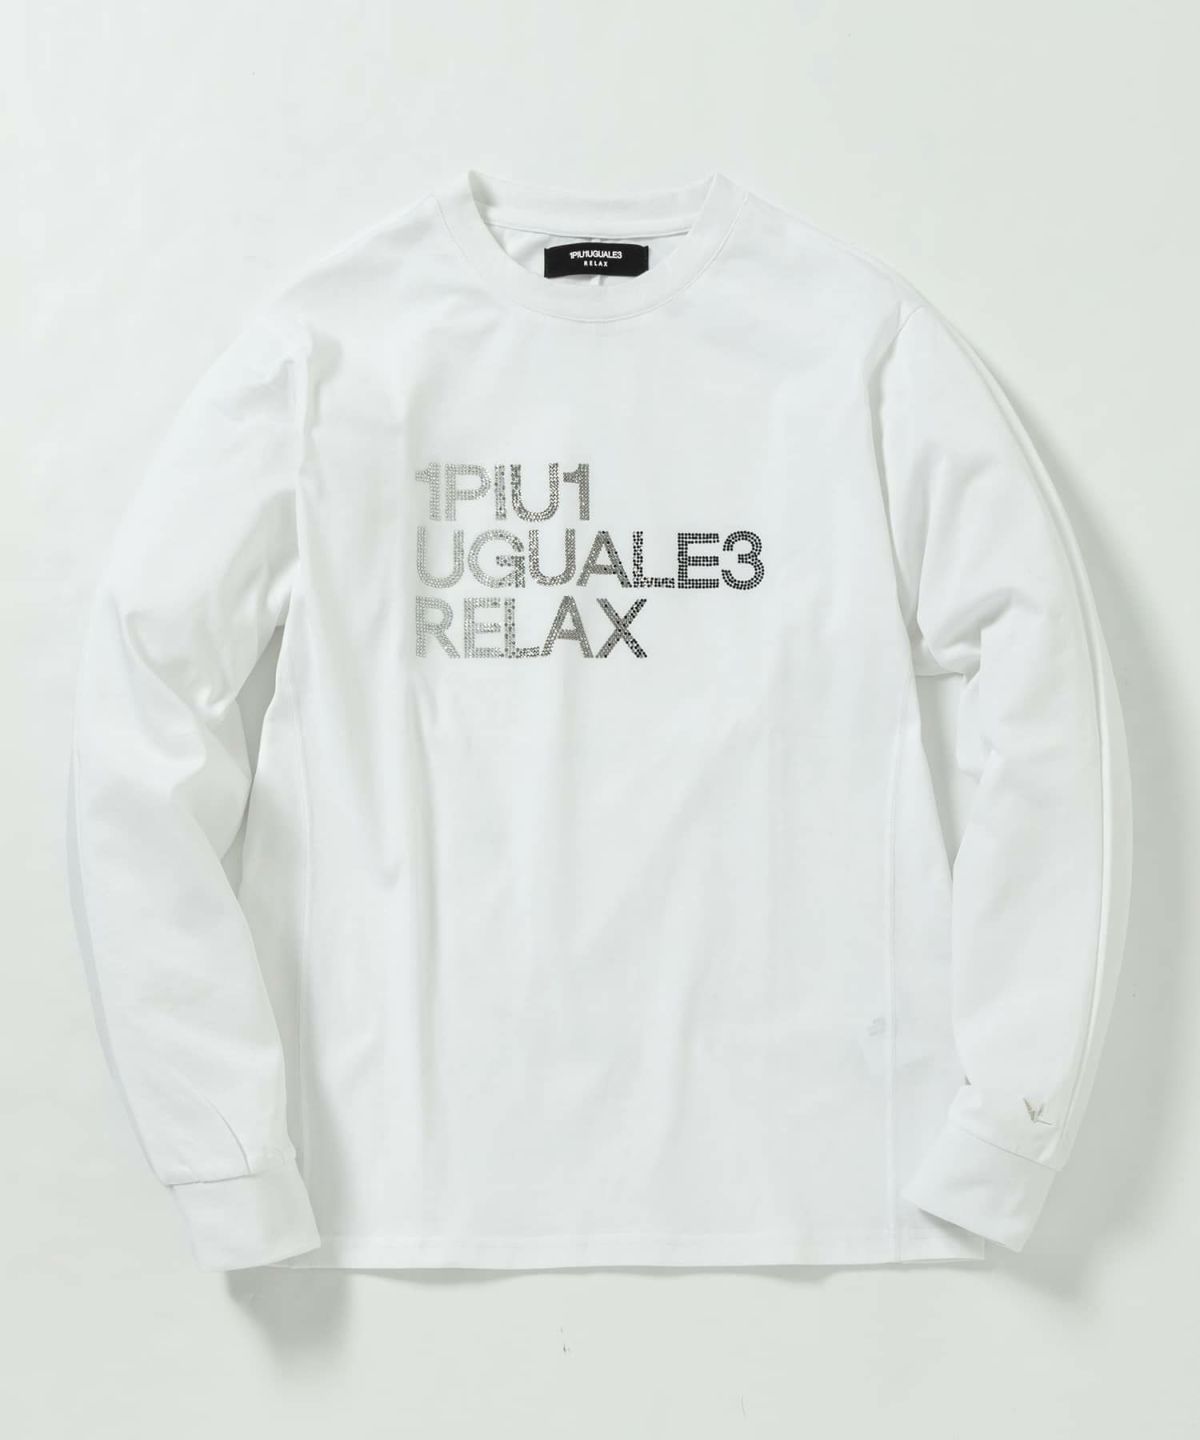 1PIU1UGUALE3 RELAX(ウノピゥウノウグァーレトレ リラックス)ラインストーンロゴロングTシャツ